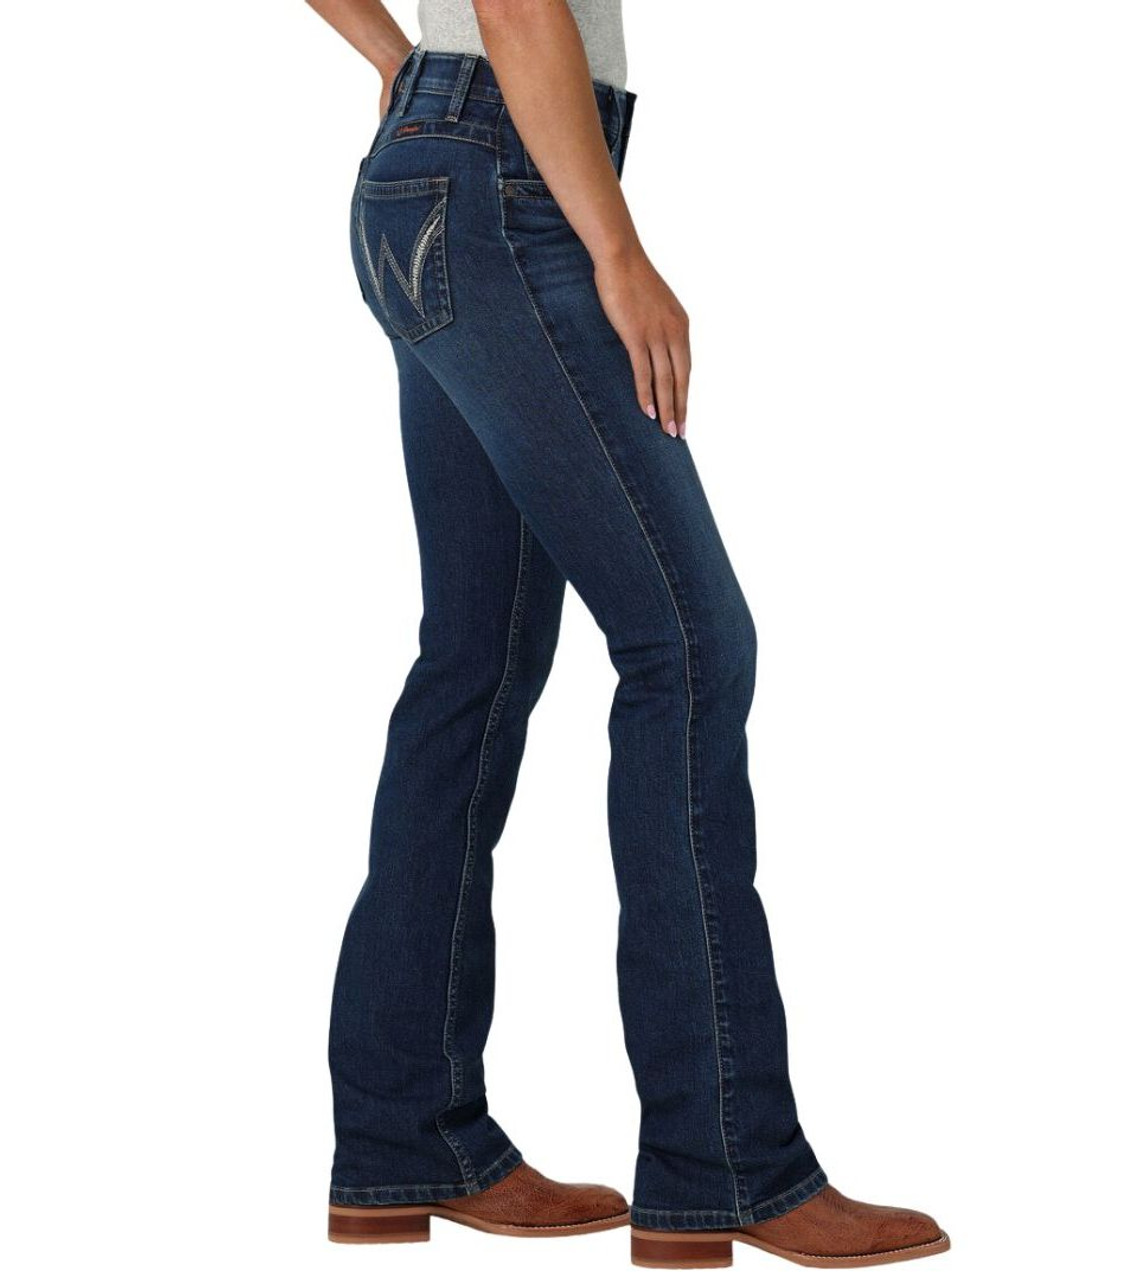 Wrangler Cash Women's Jeans, Little Bit Western